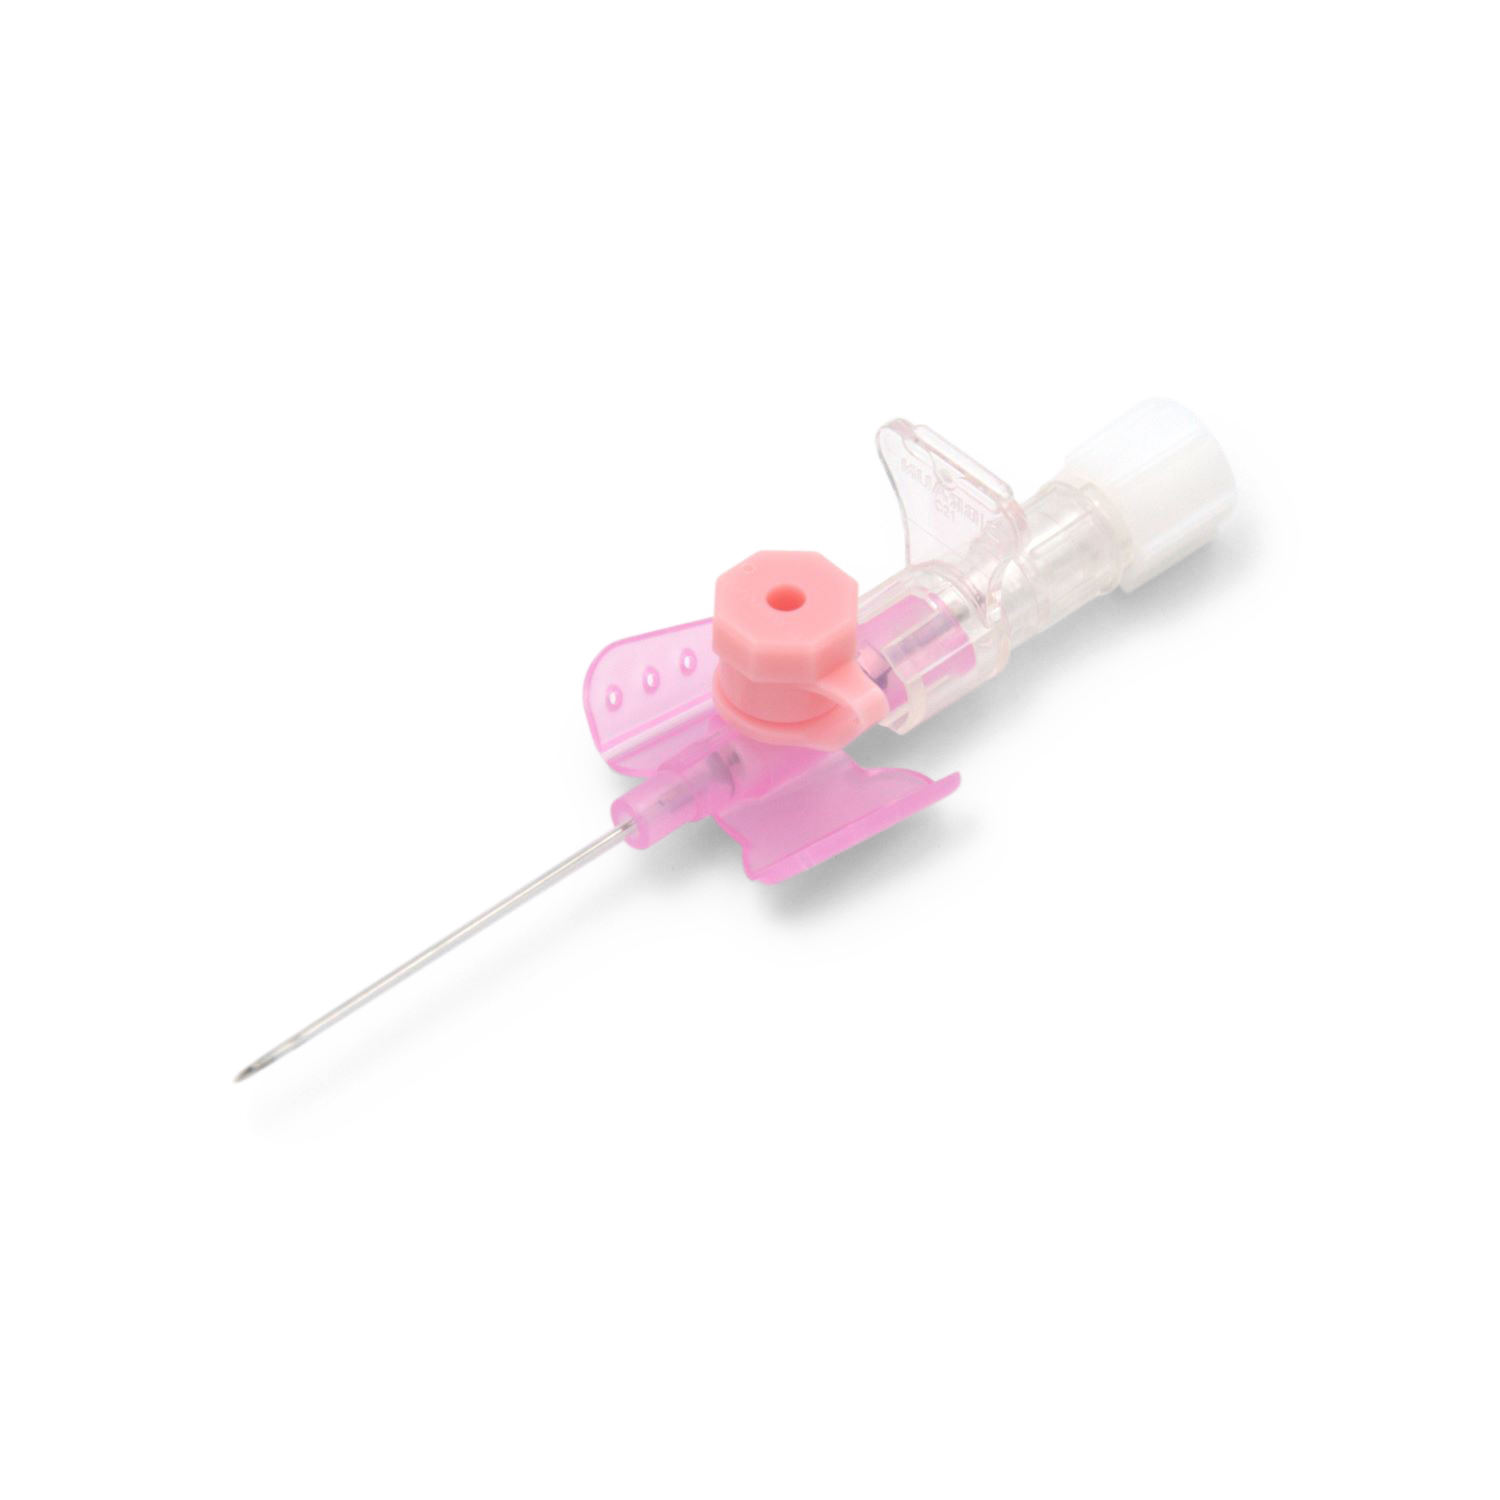 Vasofix® Safety Sicherheitsvenenverweilkanüle (1,10 x 33 mm G 20 rosa, FEP)